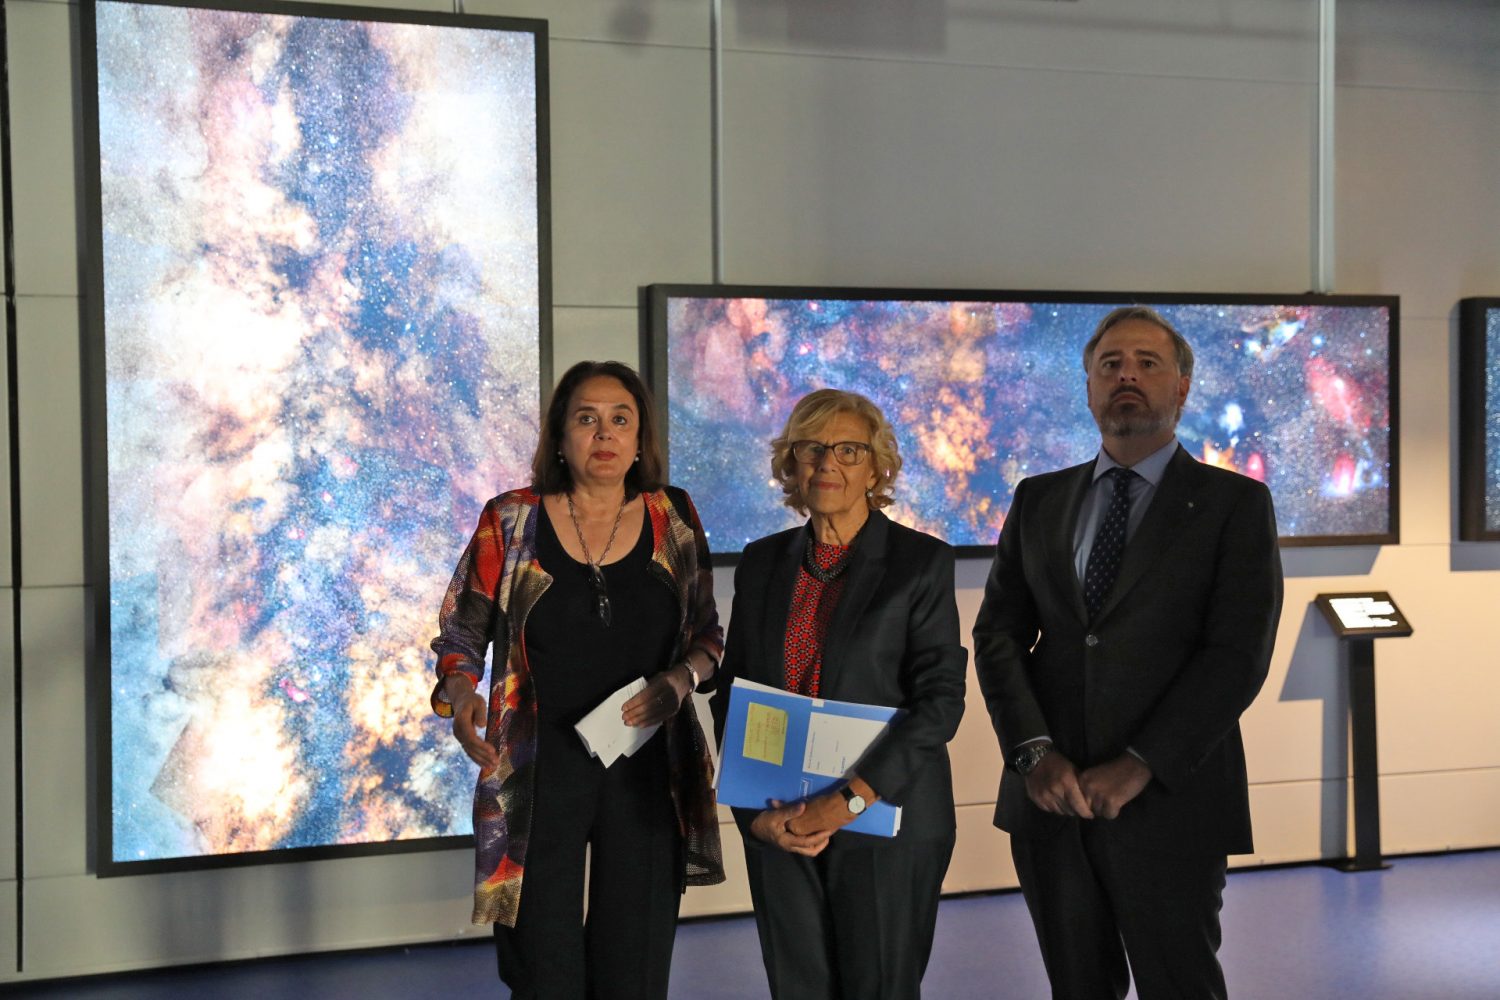 El Planetario de Madrid se renueva y migra a la tecnología de